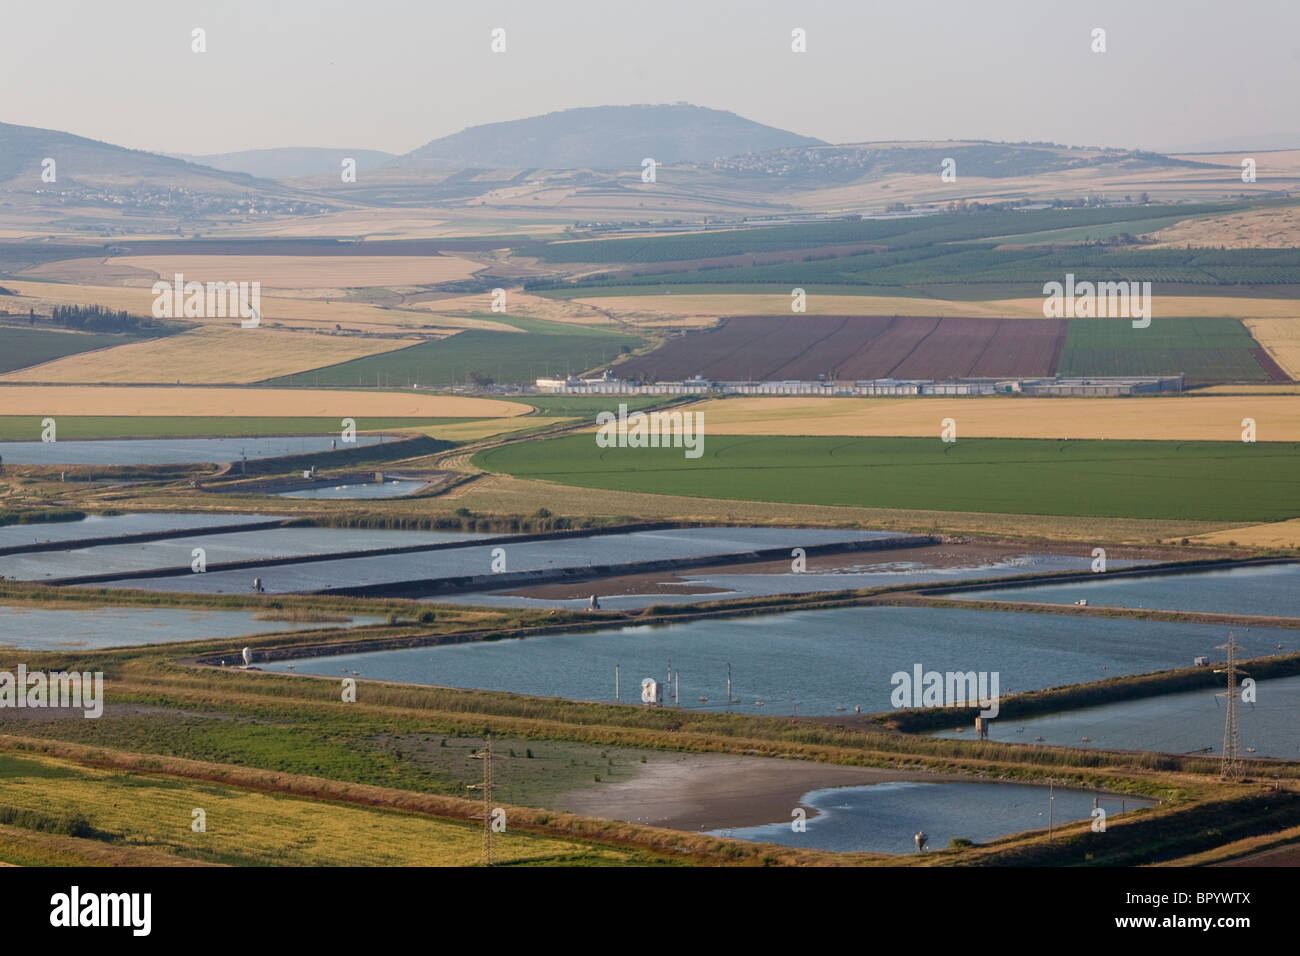 Fotografia aerea dei laghetti della valle di Jezreel Foto Stock